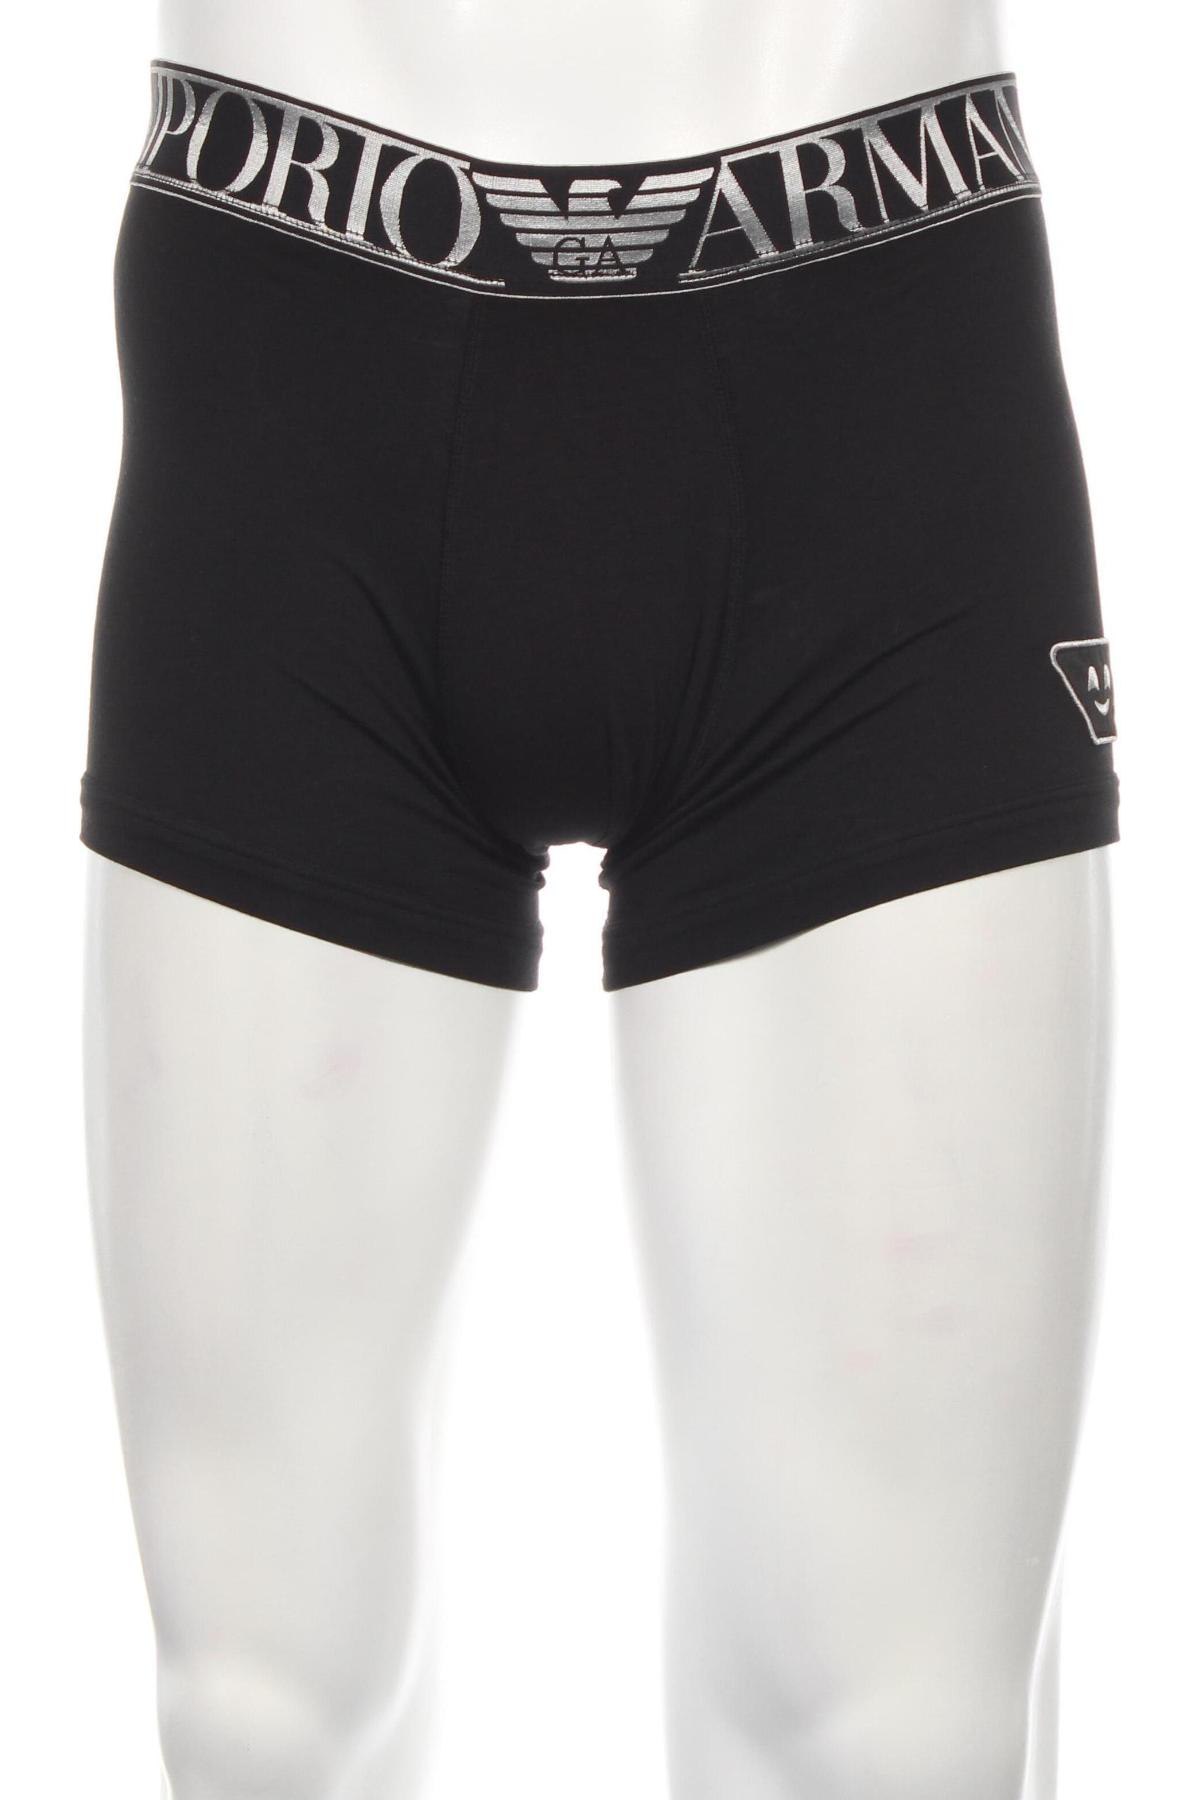 Pánske boxserky Emporio Armani Underwear, Velikost M, Barva Černá, Cena  855,00 Kč